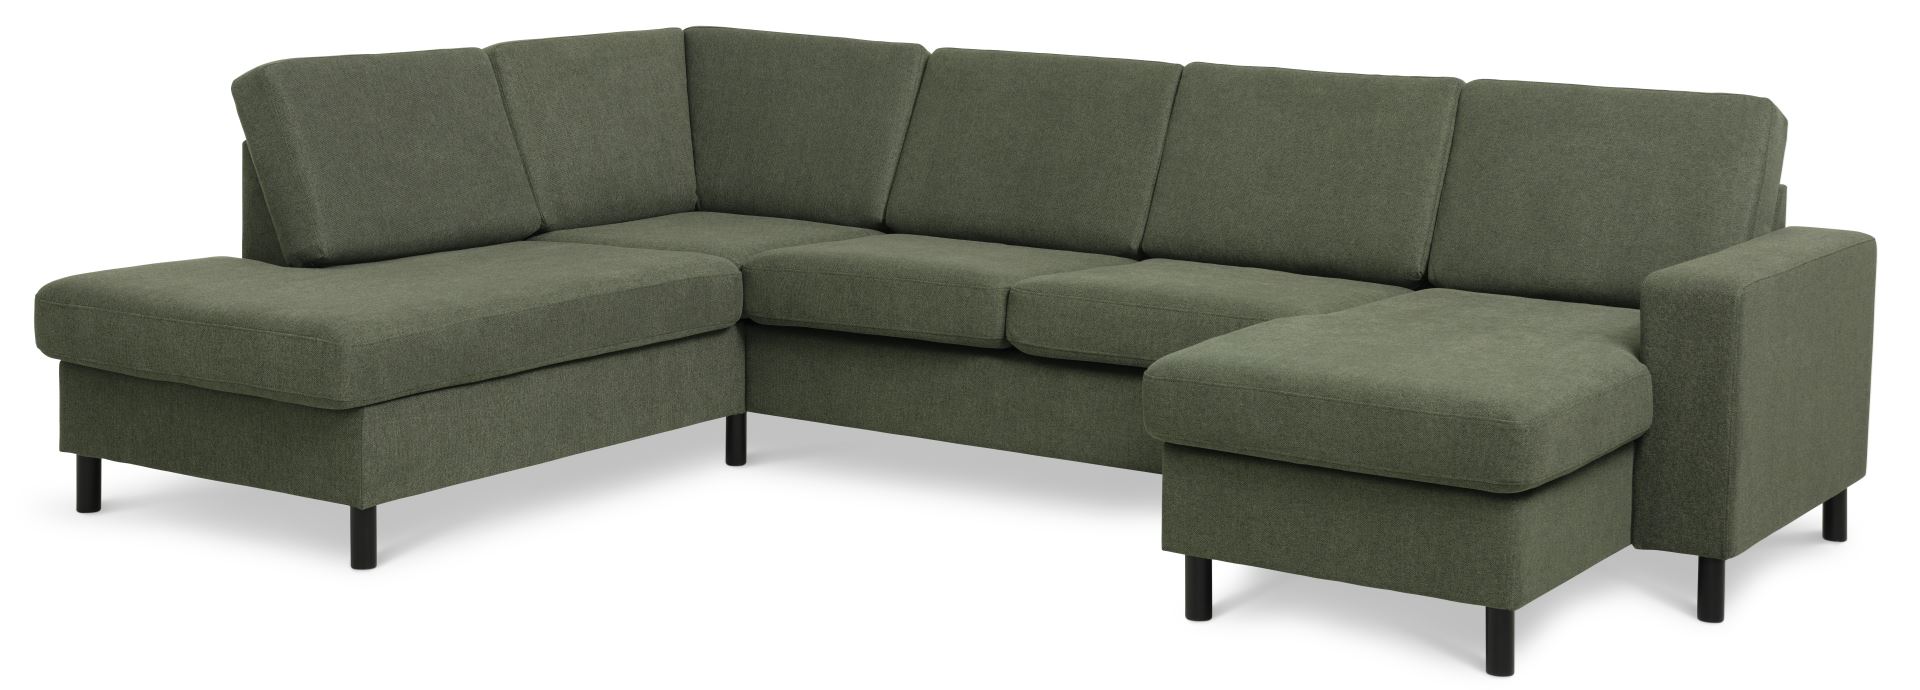 Pan set 4 U OE left sofa med chaiselong - vinter mosgrøn polyester stof og sort træ